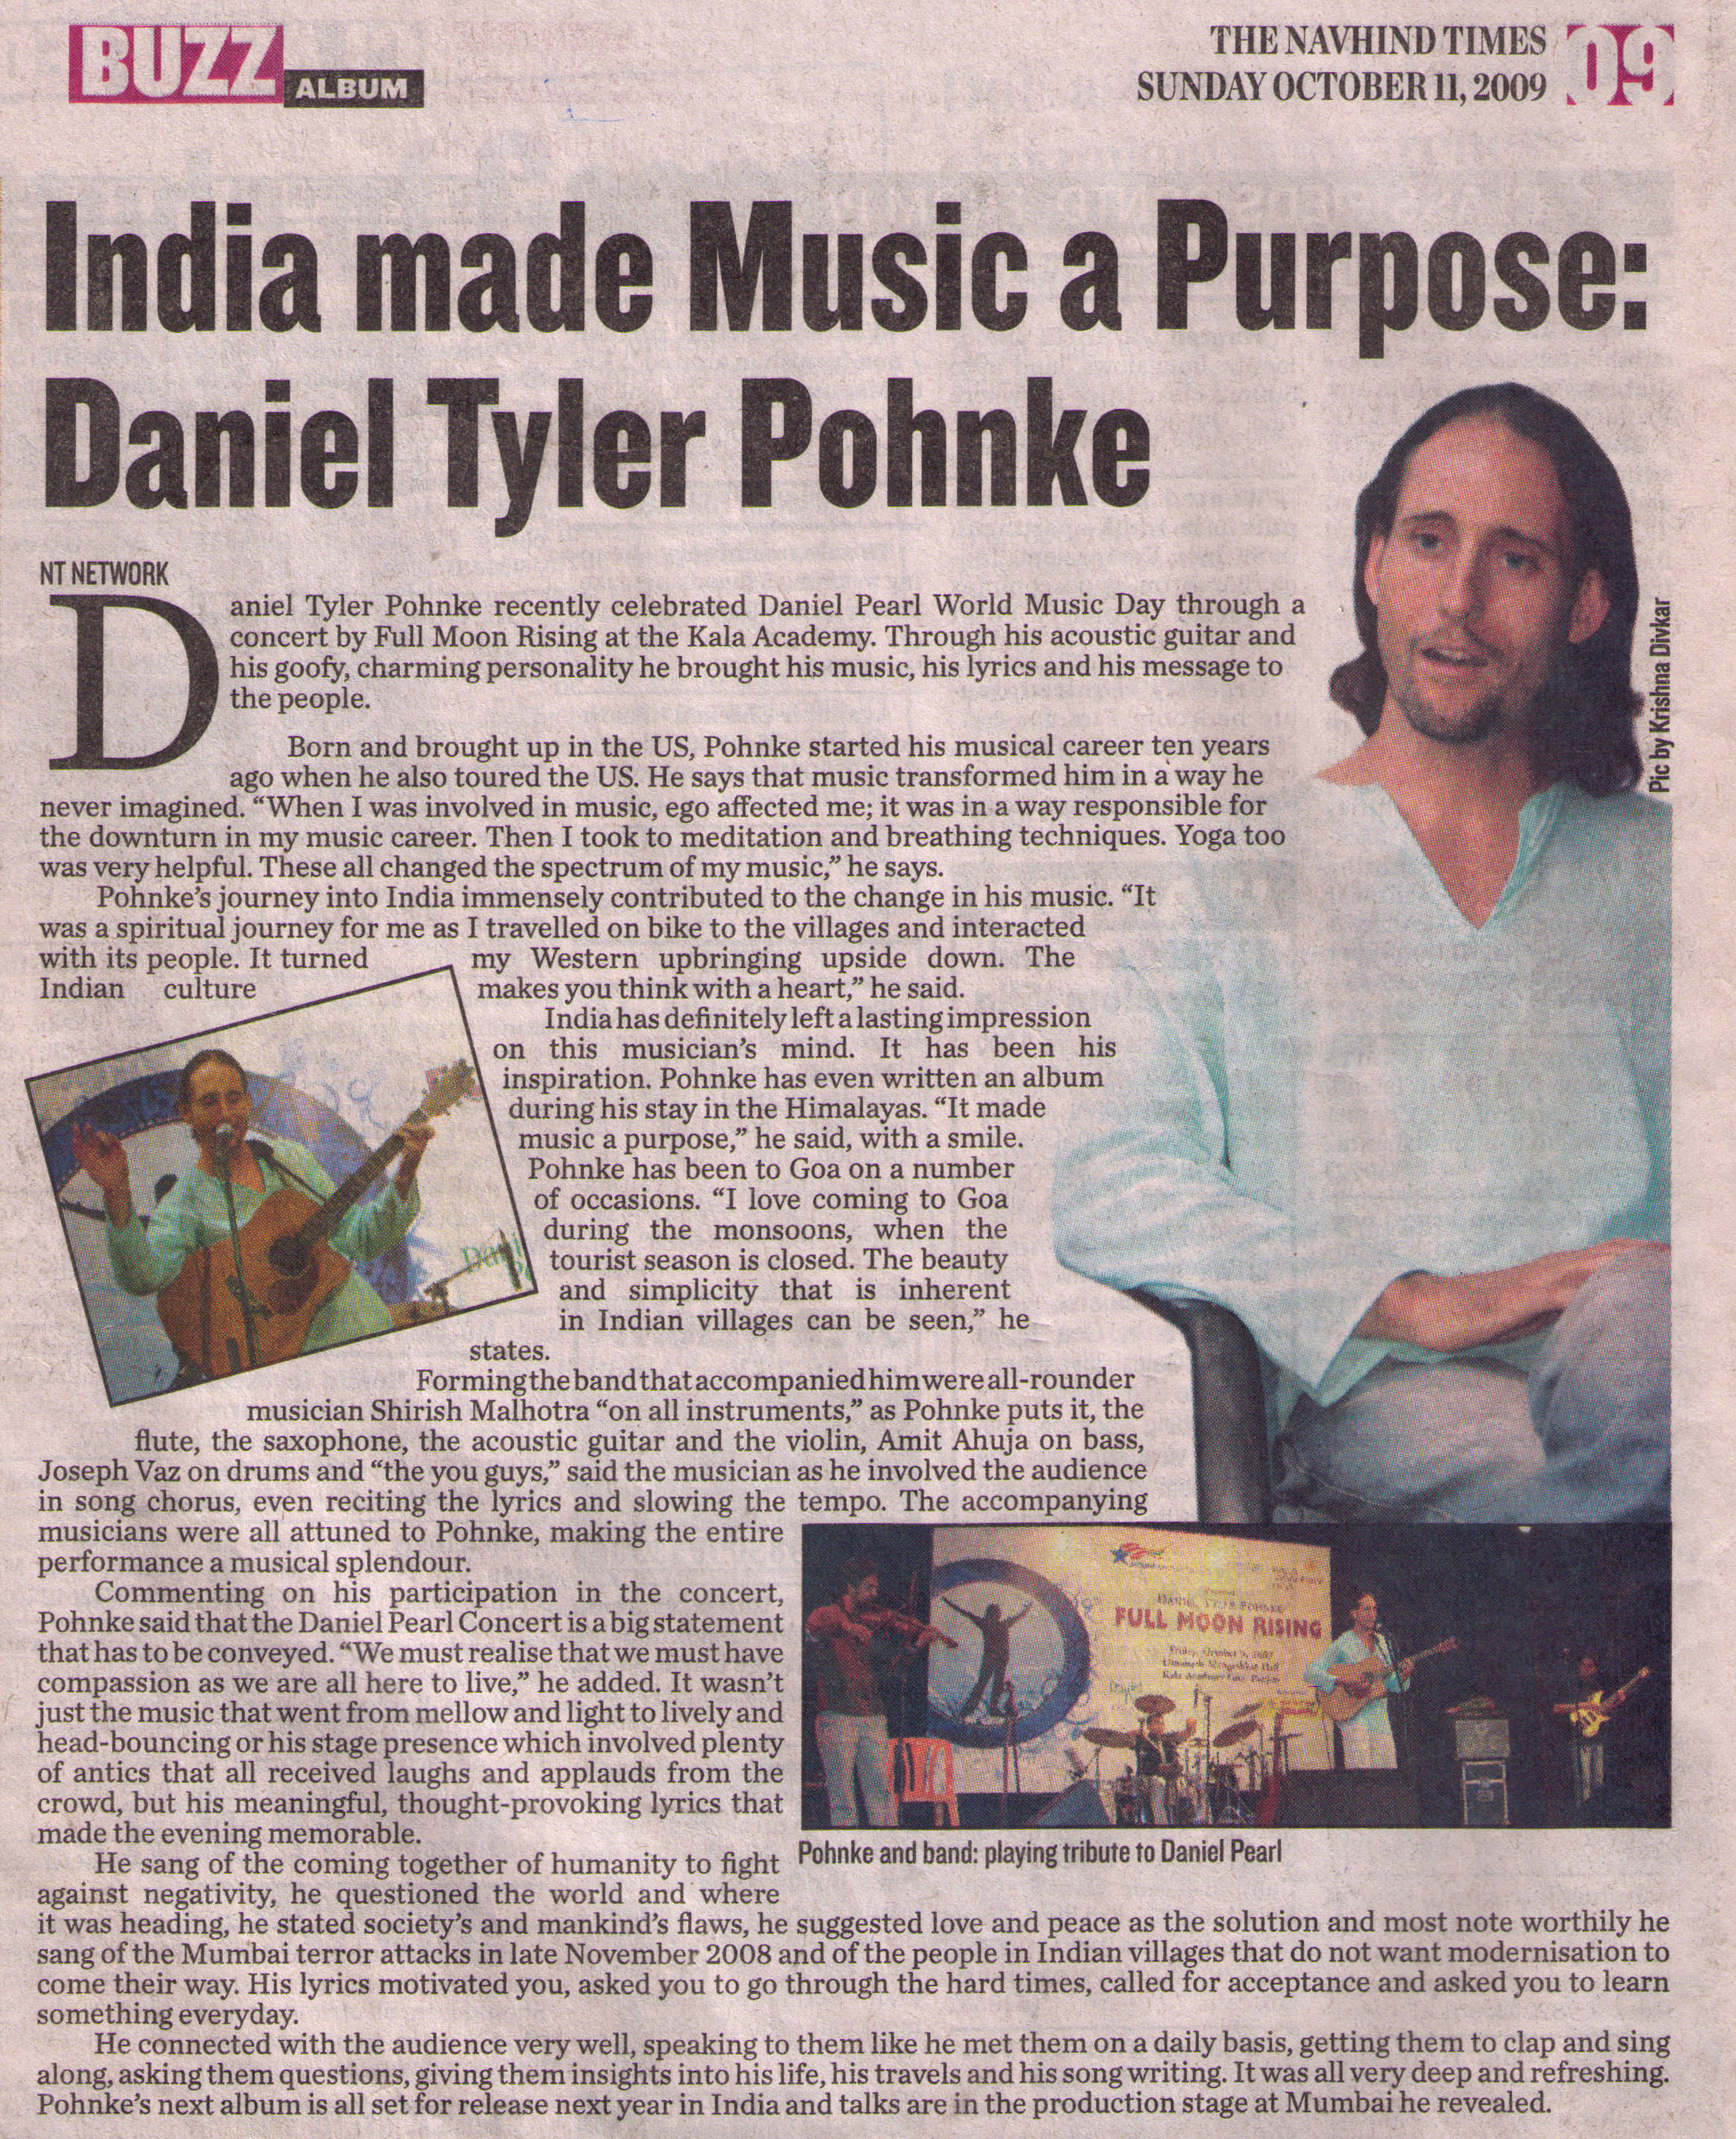 Daniel Tyler Pohnke of Full Moon Rising: Music 